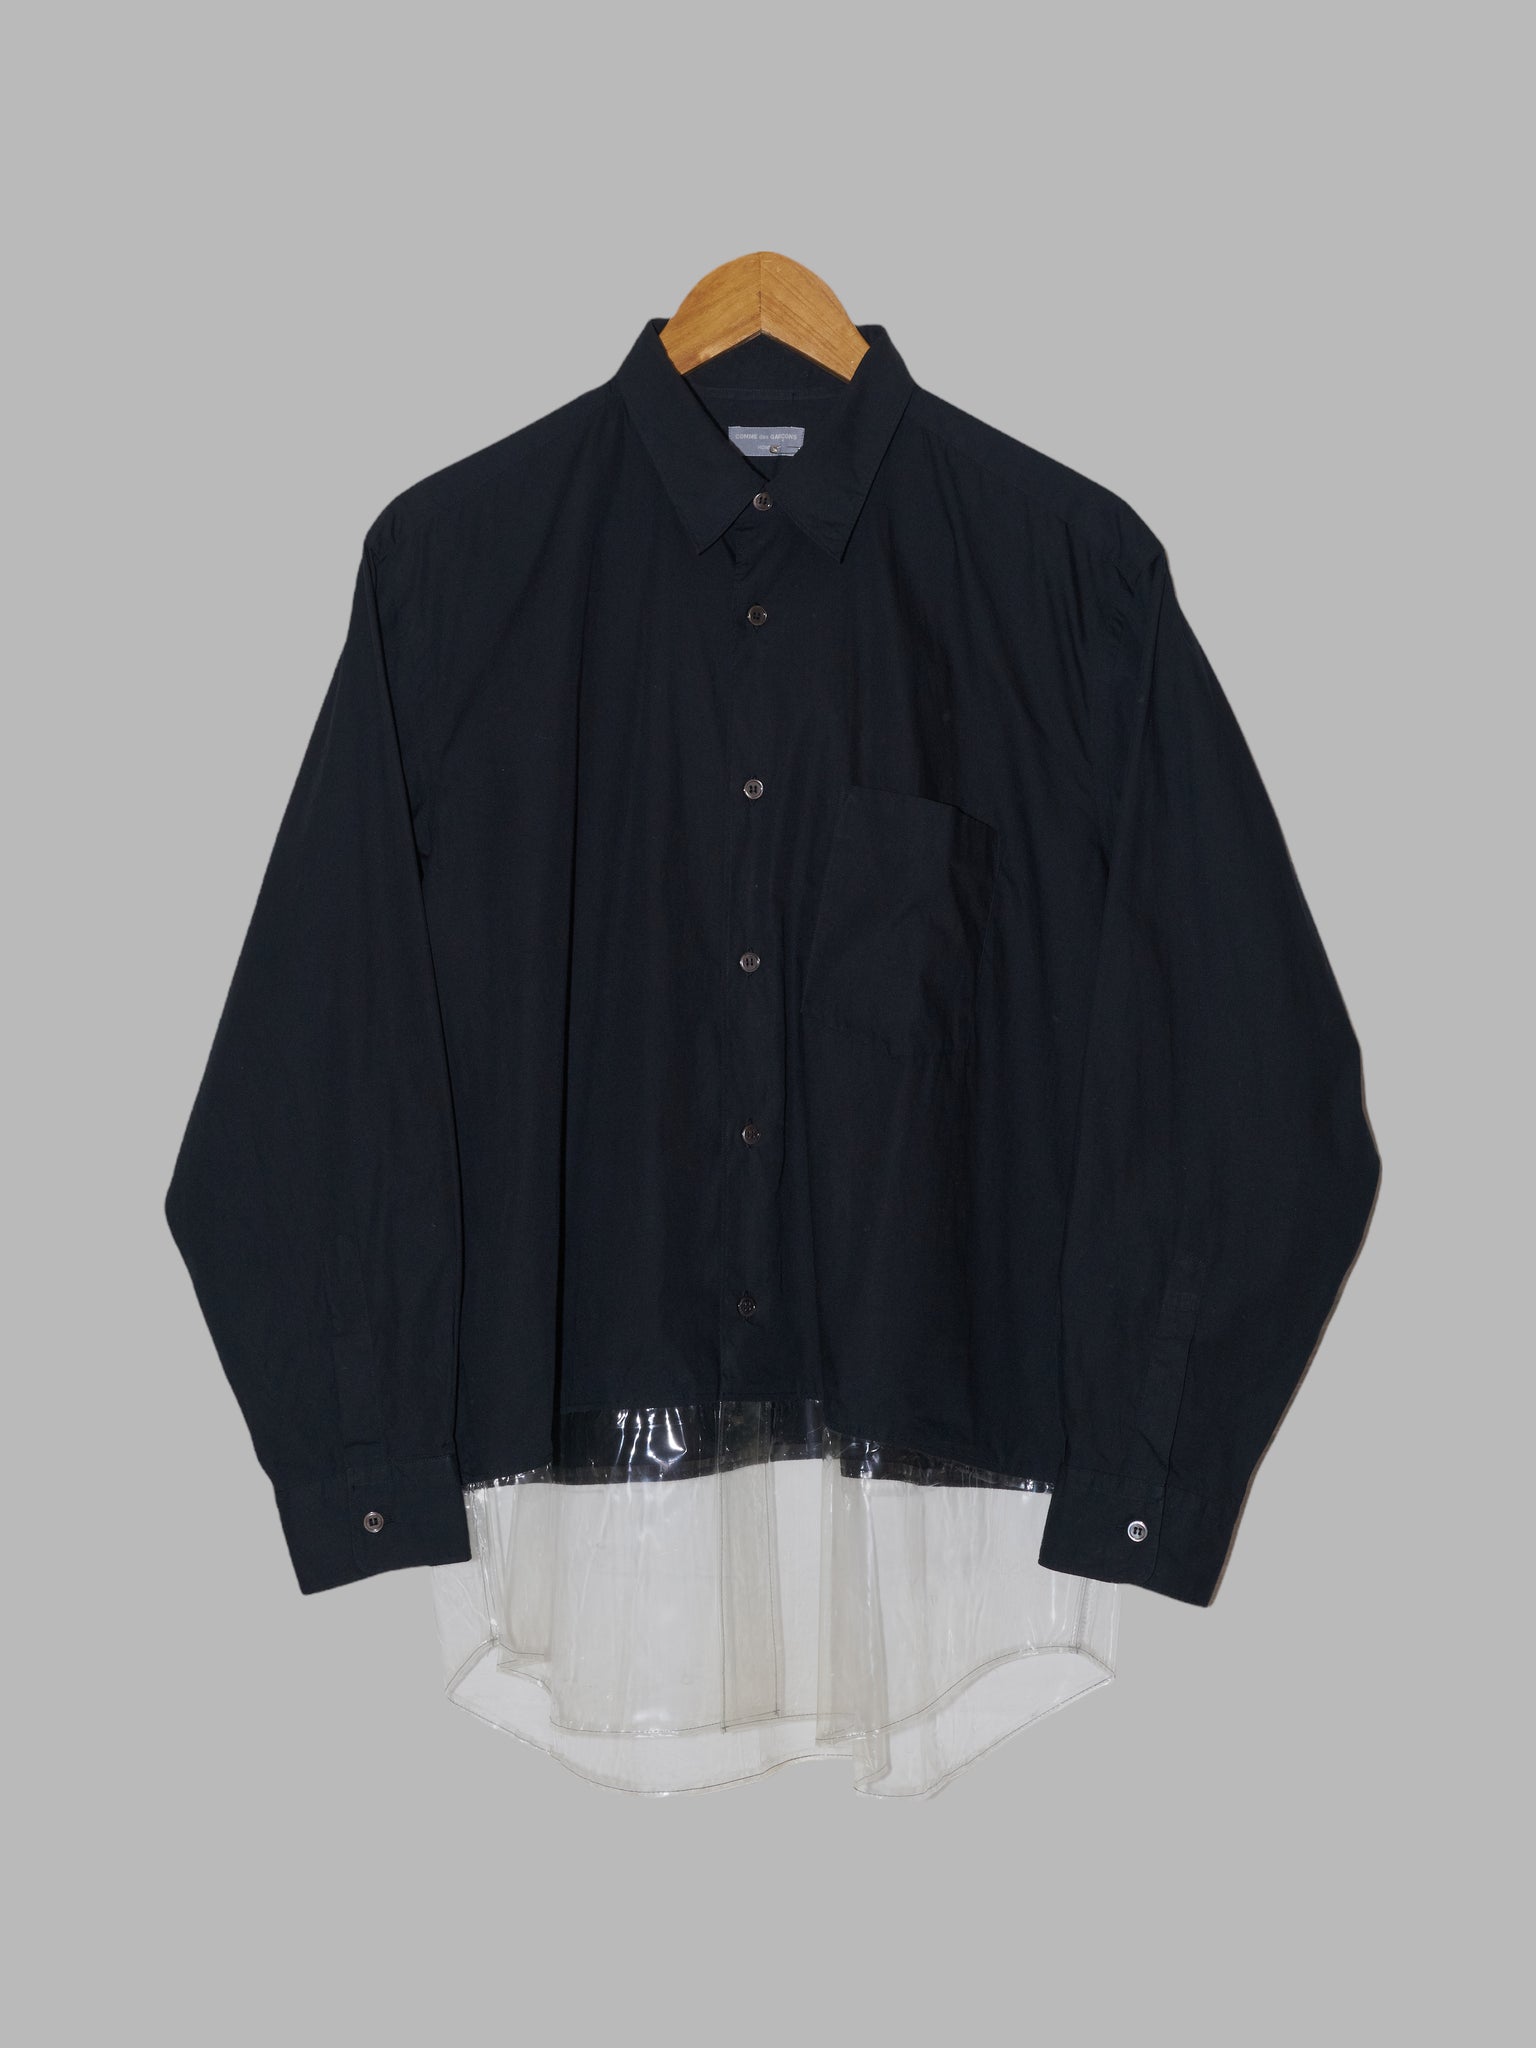 Comme des Garcons Homme 1996 black cotton shirt with transparent vinyl hem - M L